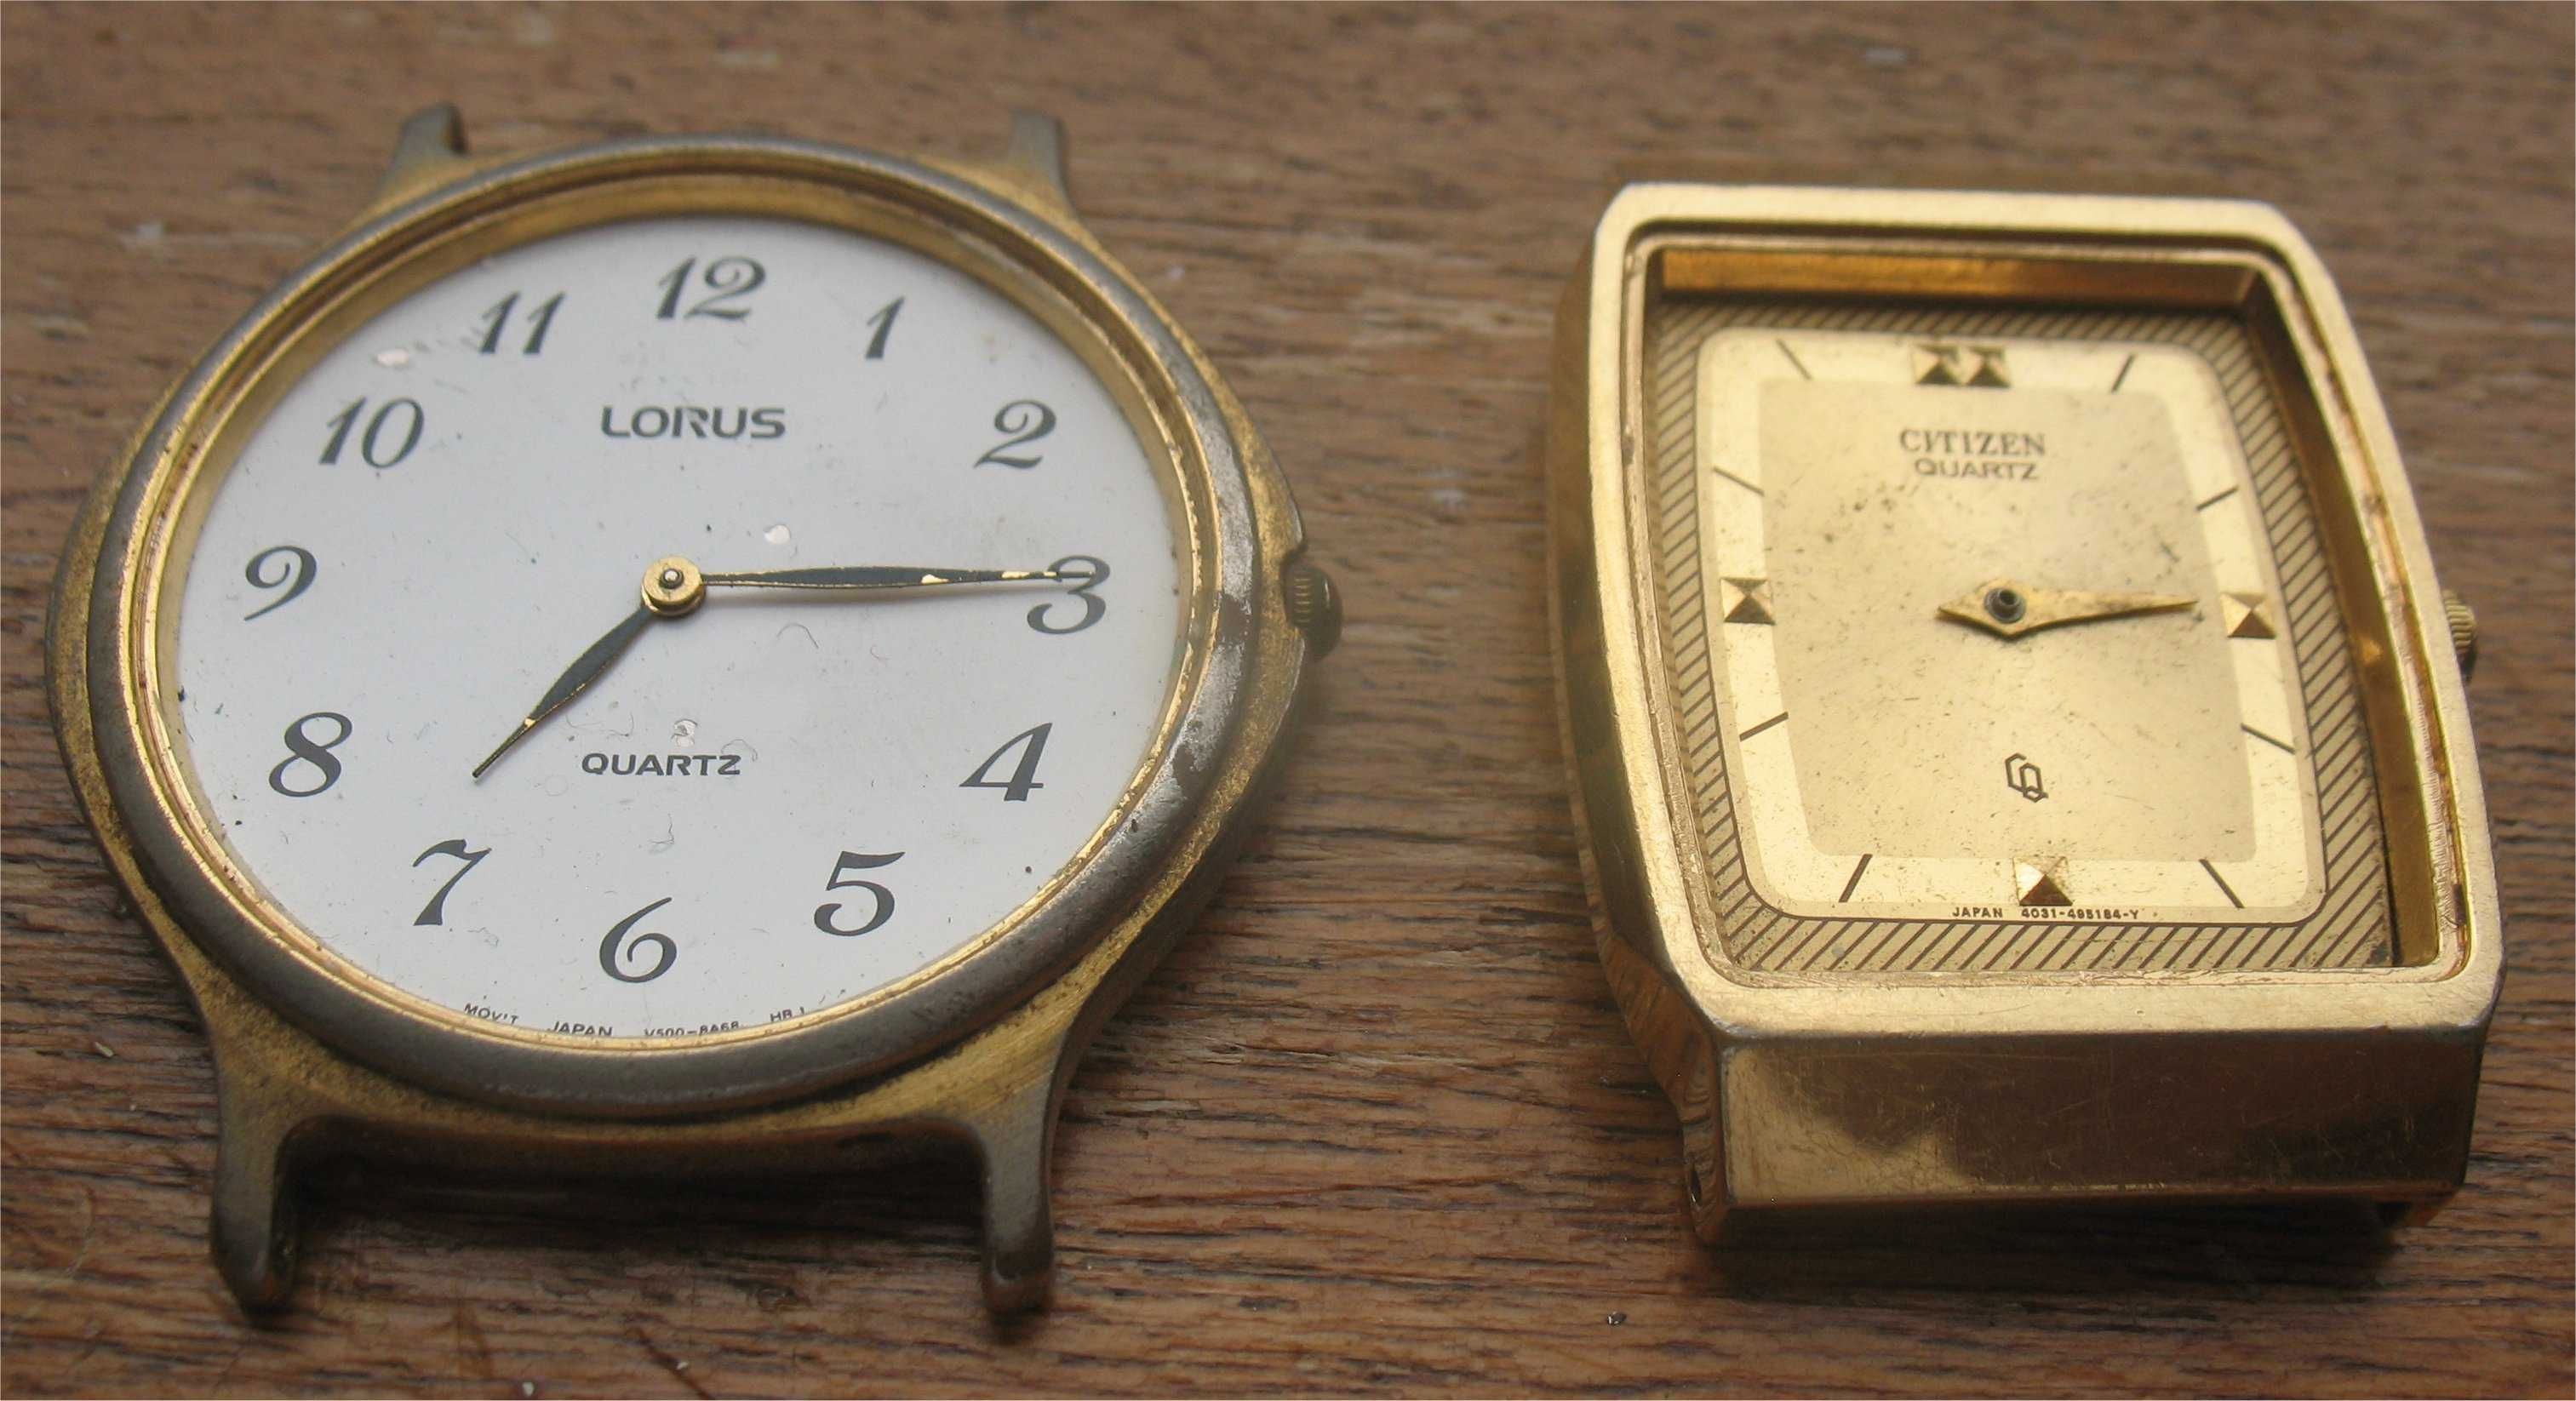 2 Relógios - Lorus e Citizen - Avariados e Incompletos